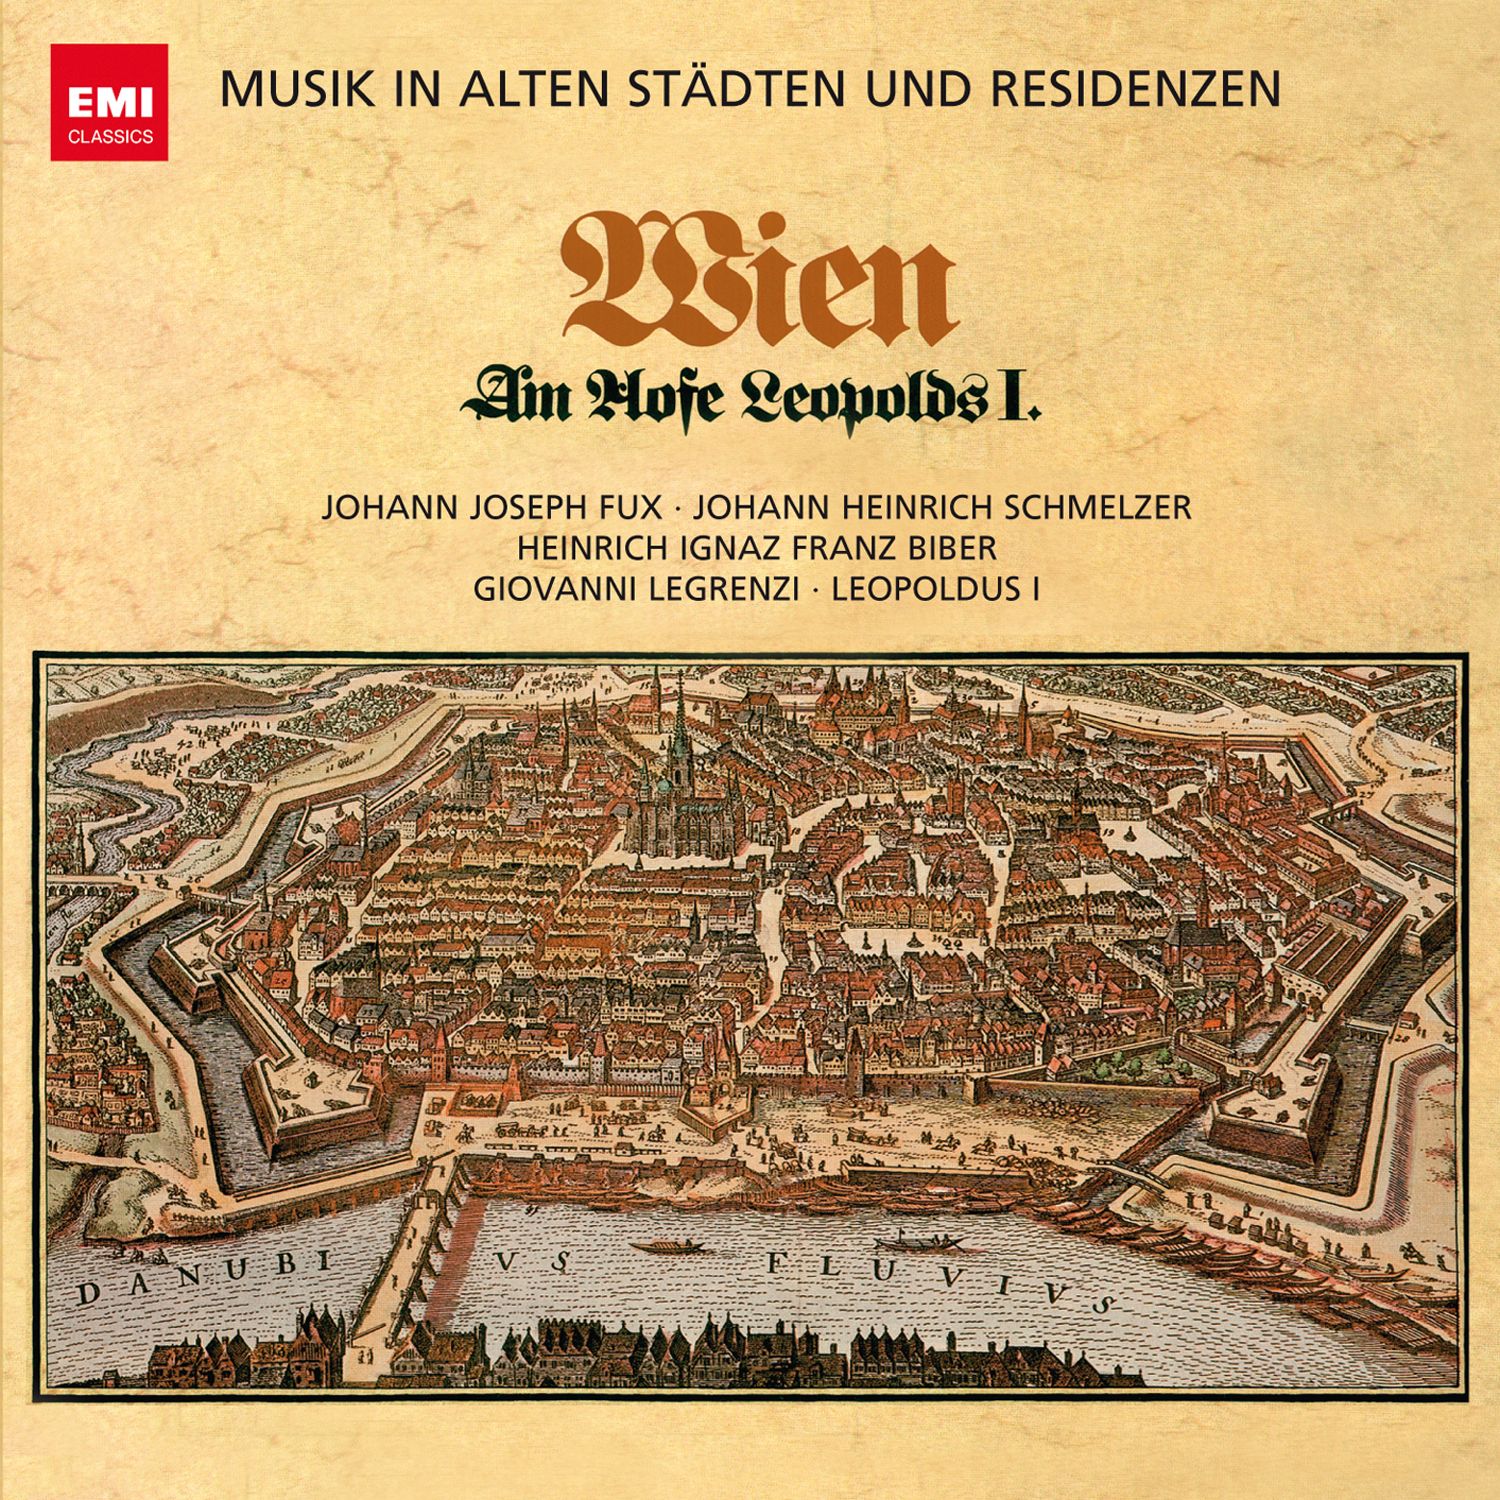 Musik in alten St dten  Residenzen: Wien